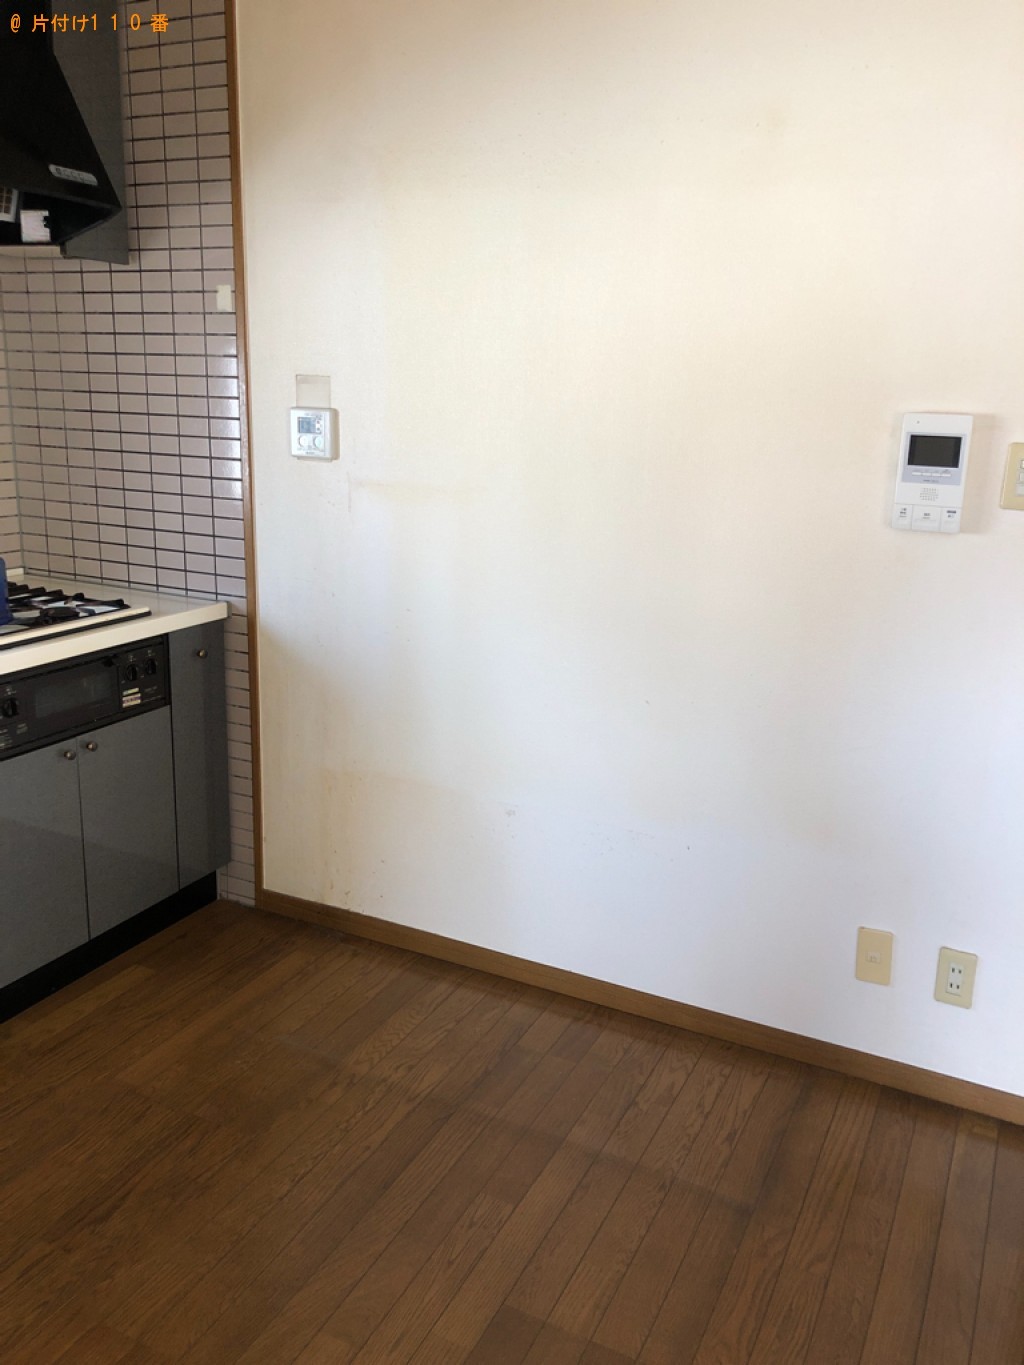 【福岡市南区】食器棚、冷蔵庫、シングルベッドの回収・処分ご依頼